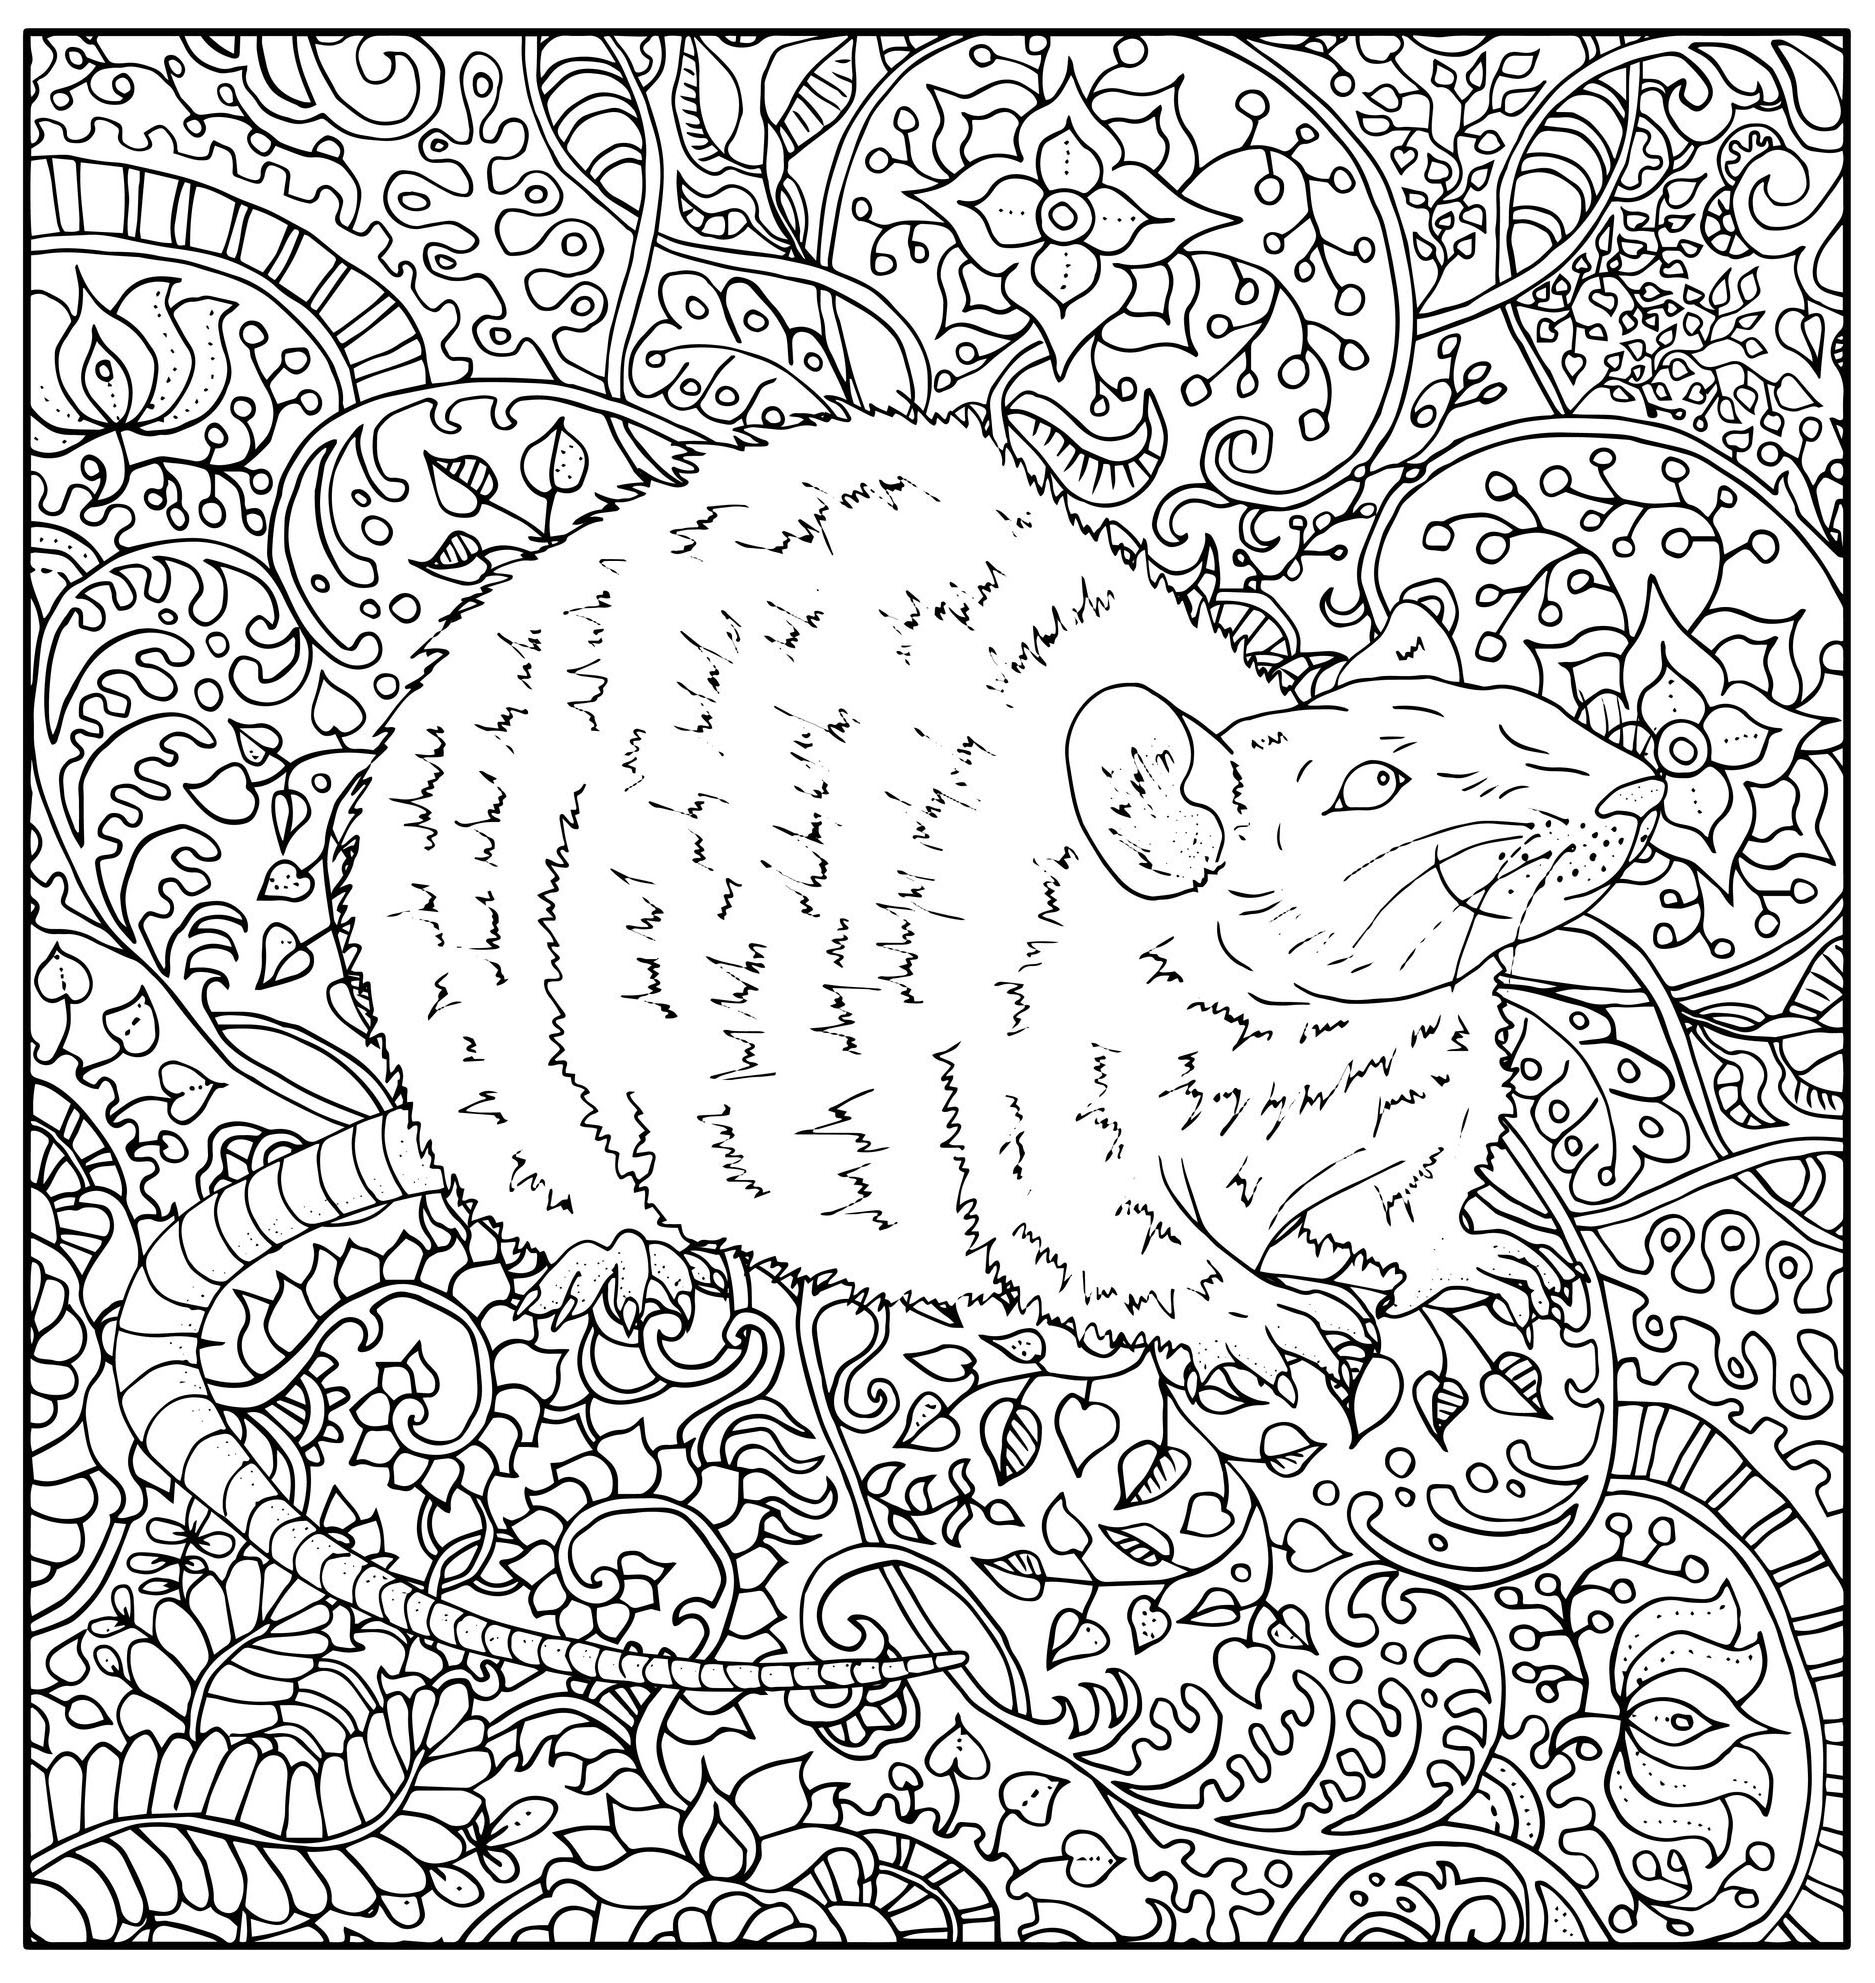 Página para colorir representando uma ratazana desenhada de forma realista com vários padrões vegetais abstractos, Fonte : 123rf   Artista : Vera Petruk